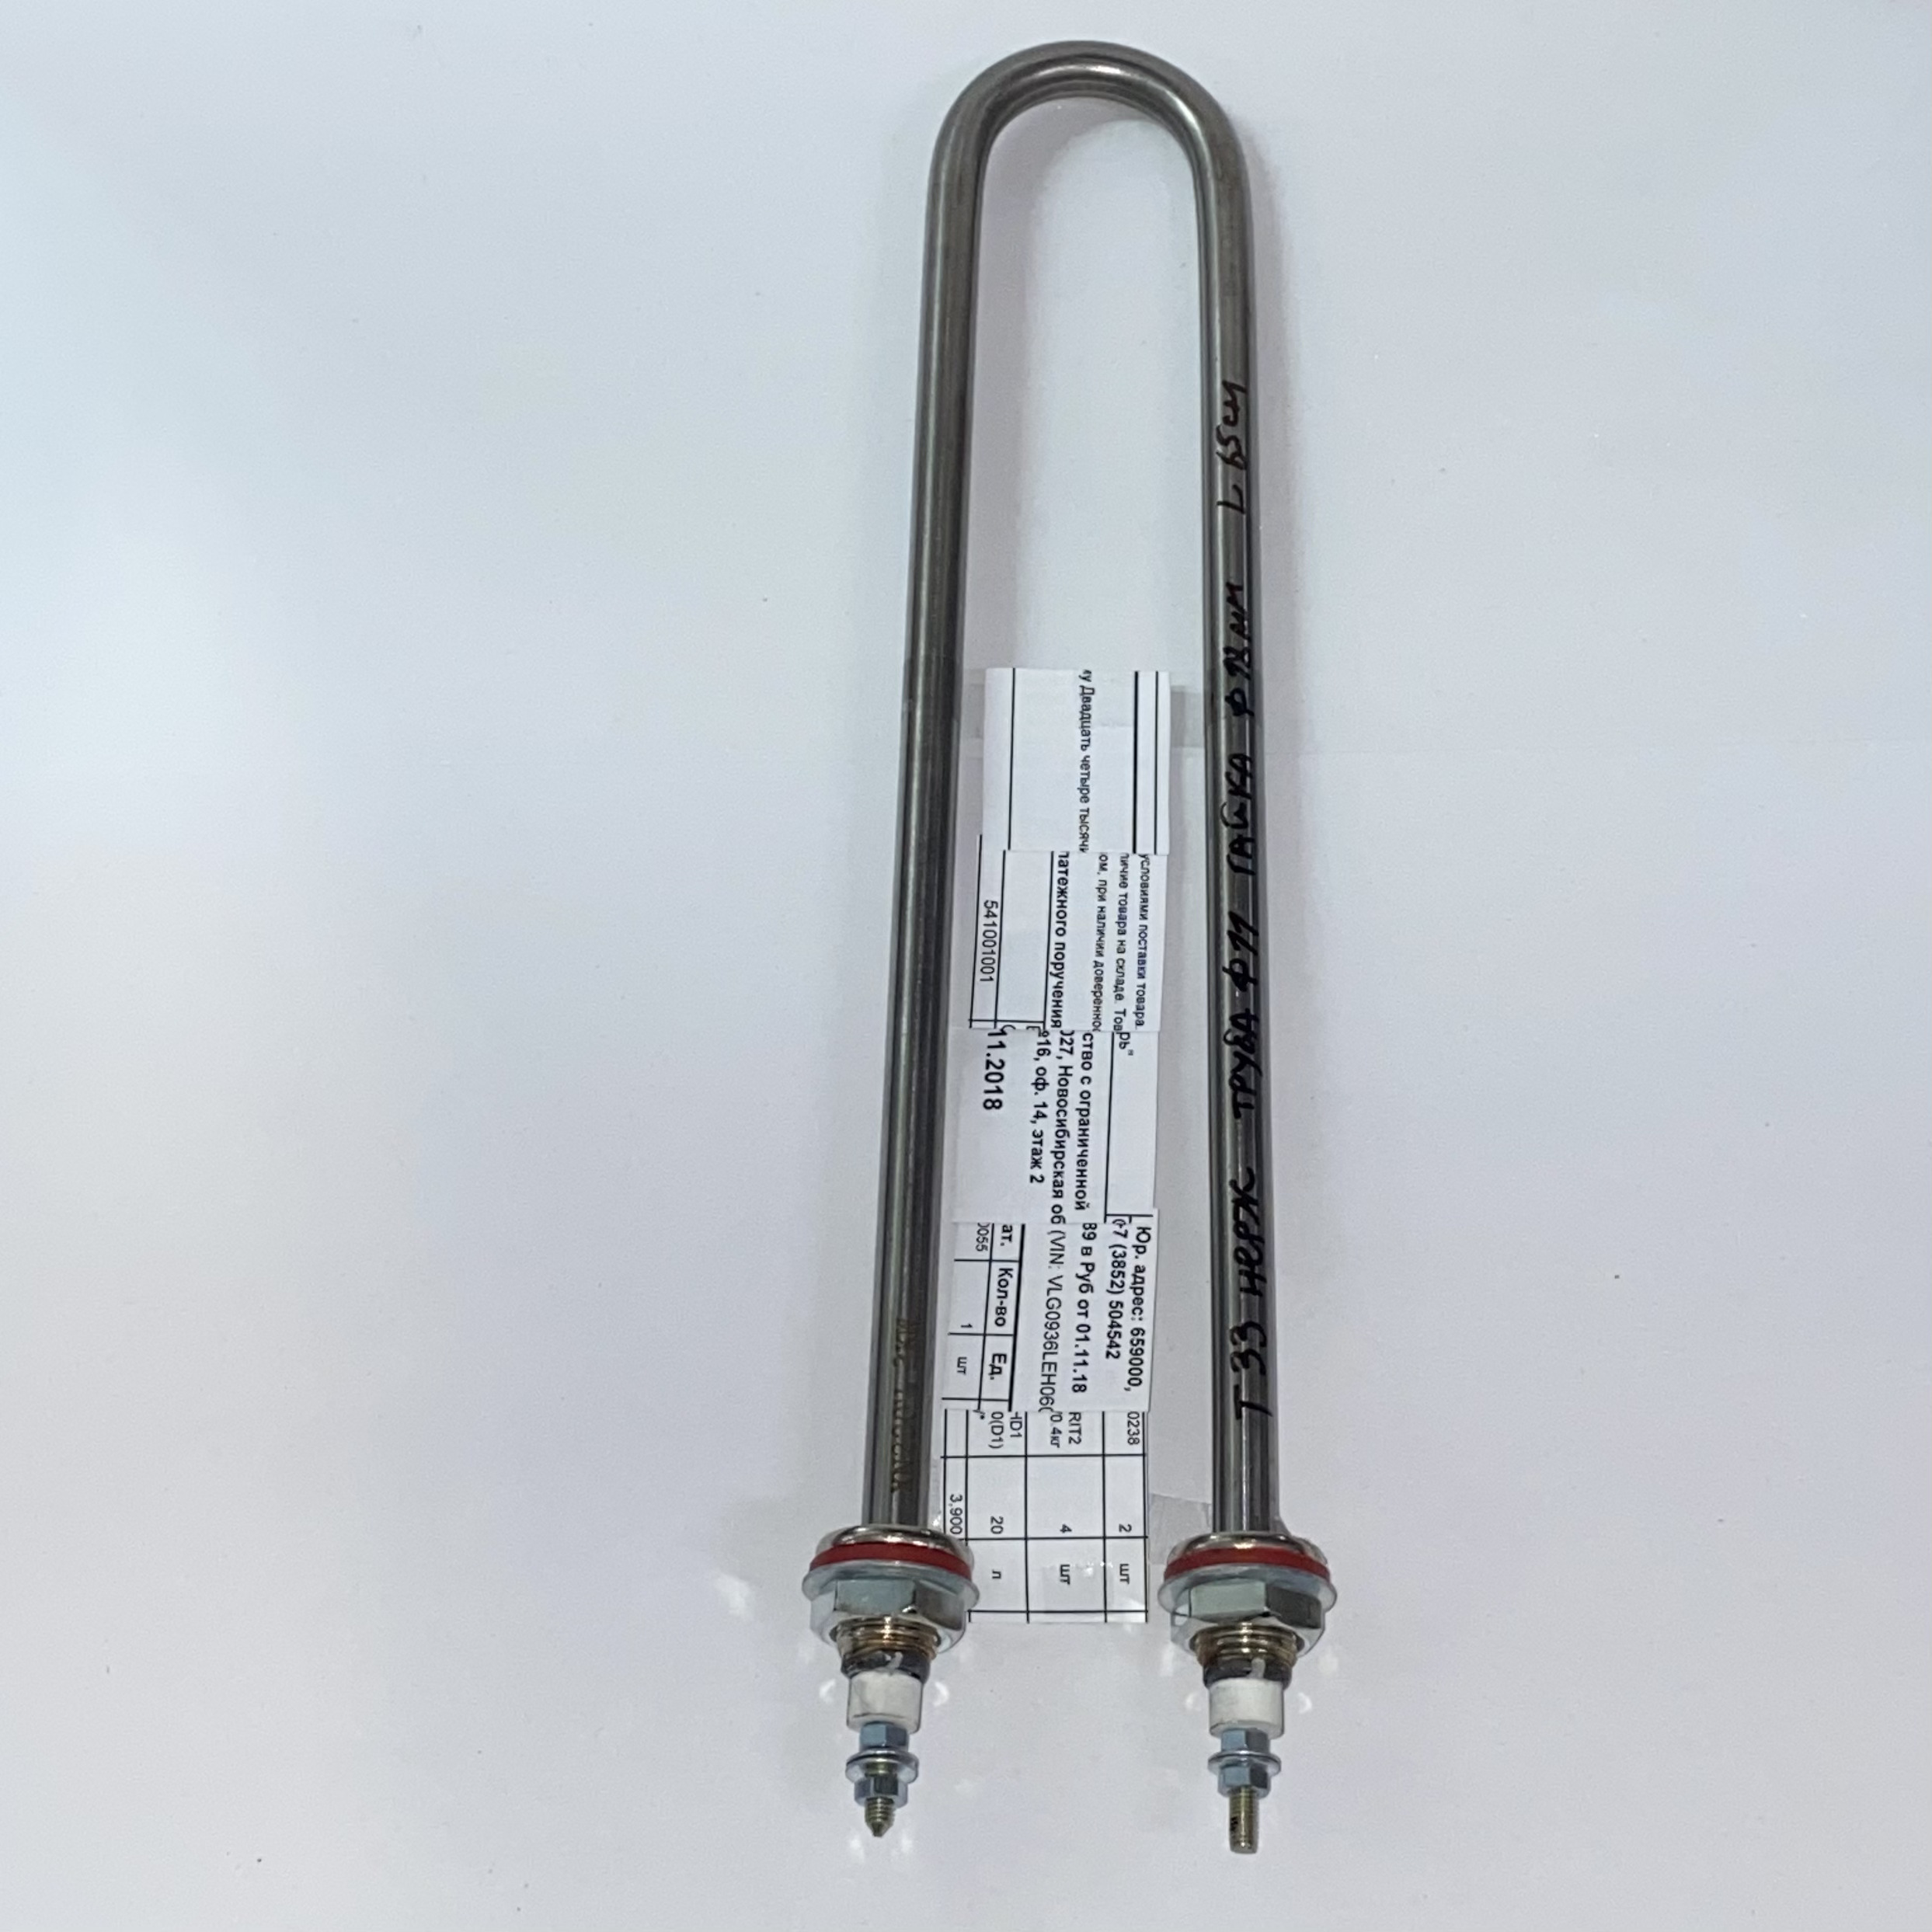 ТЭН для воды Хром 5,0кВт нержавейка  Q-образный (85/Ø11/штуцер Ø18)